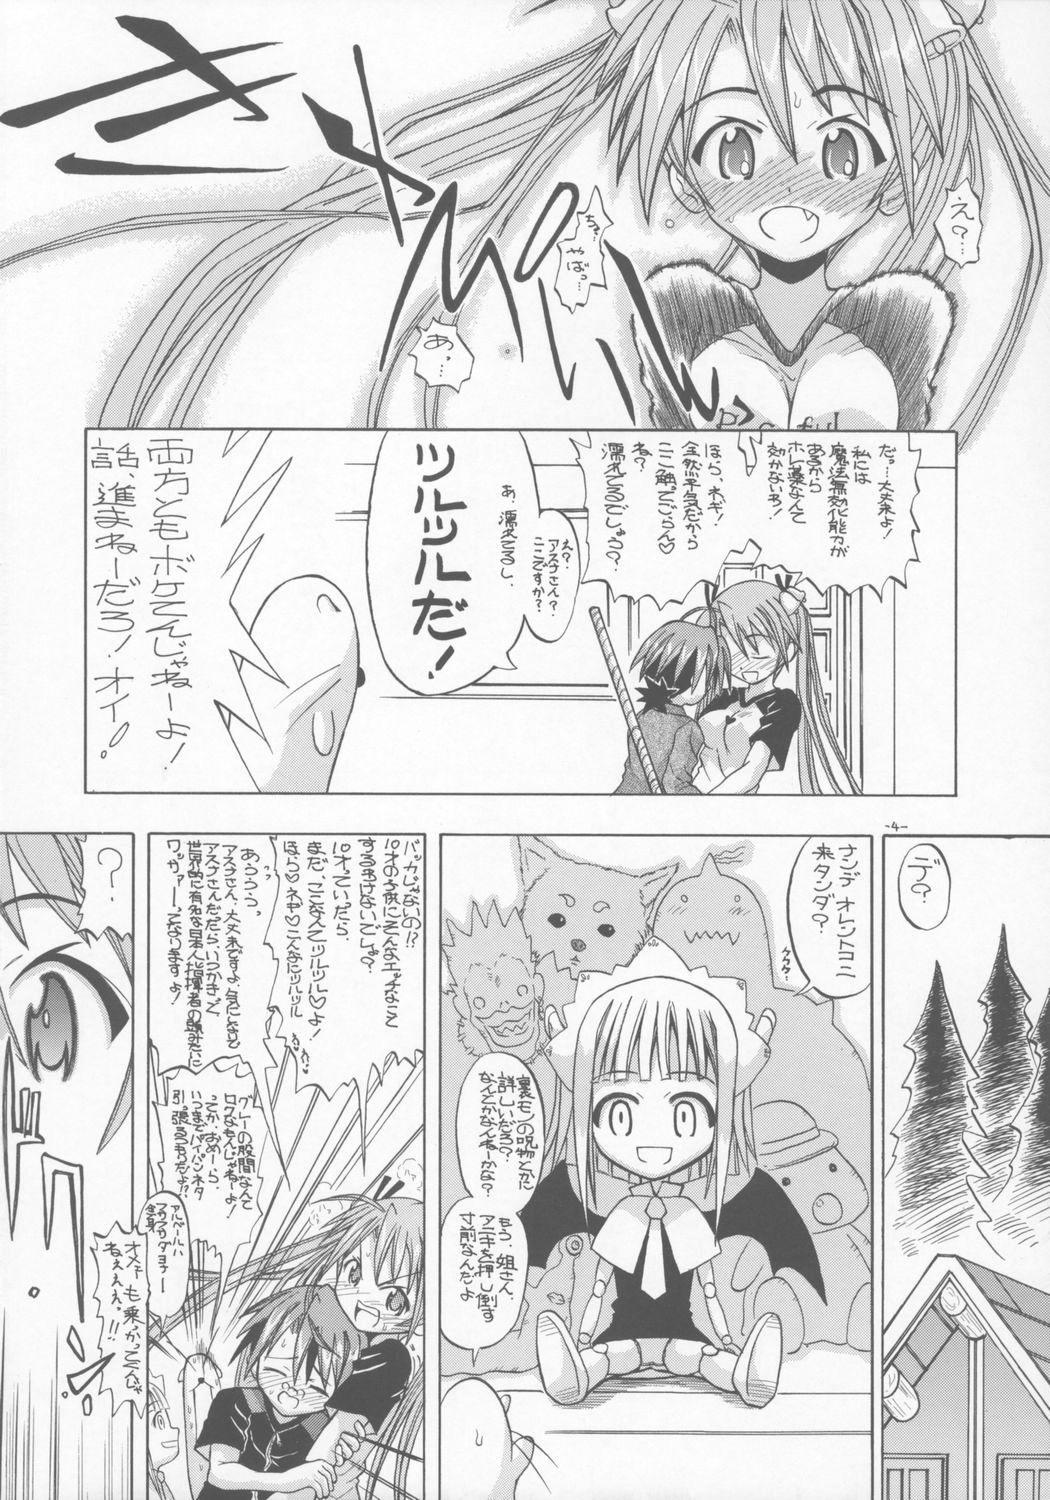 Teenpussy AsuNAX! - Mahou sensei negima Free Amateur - Page 3